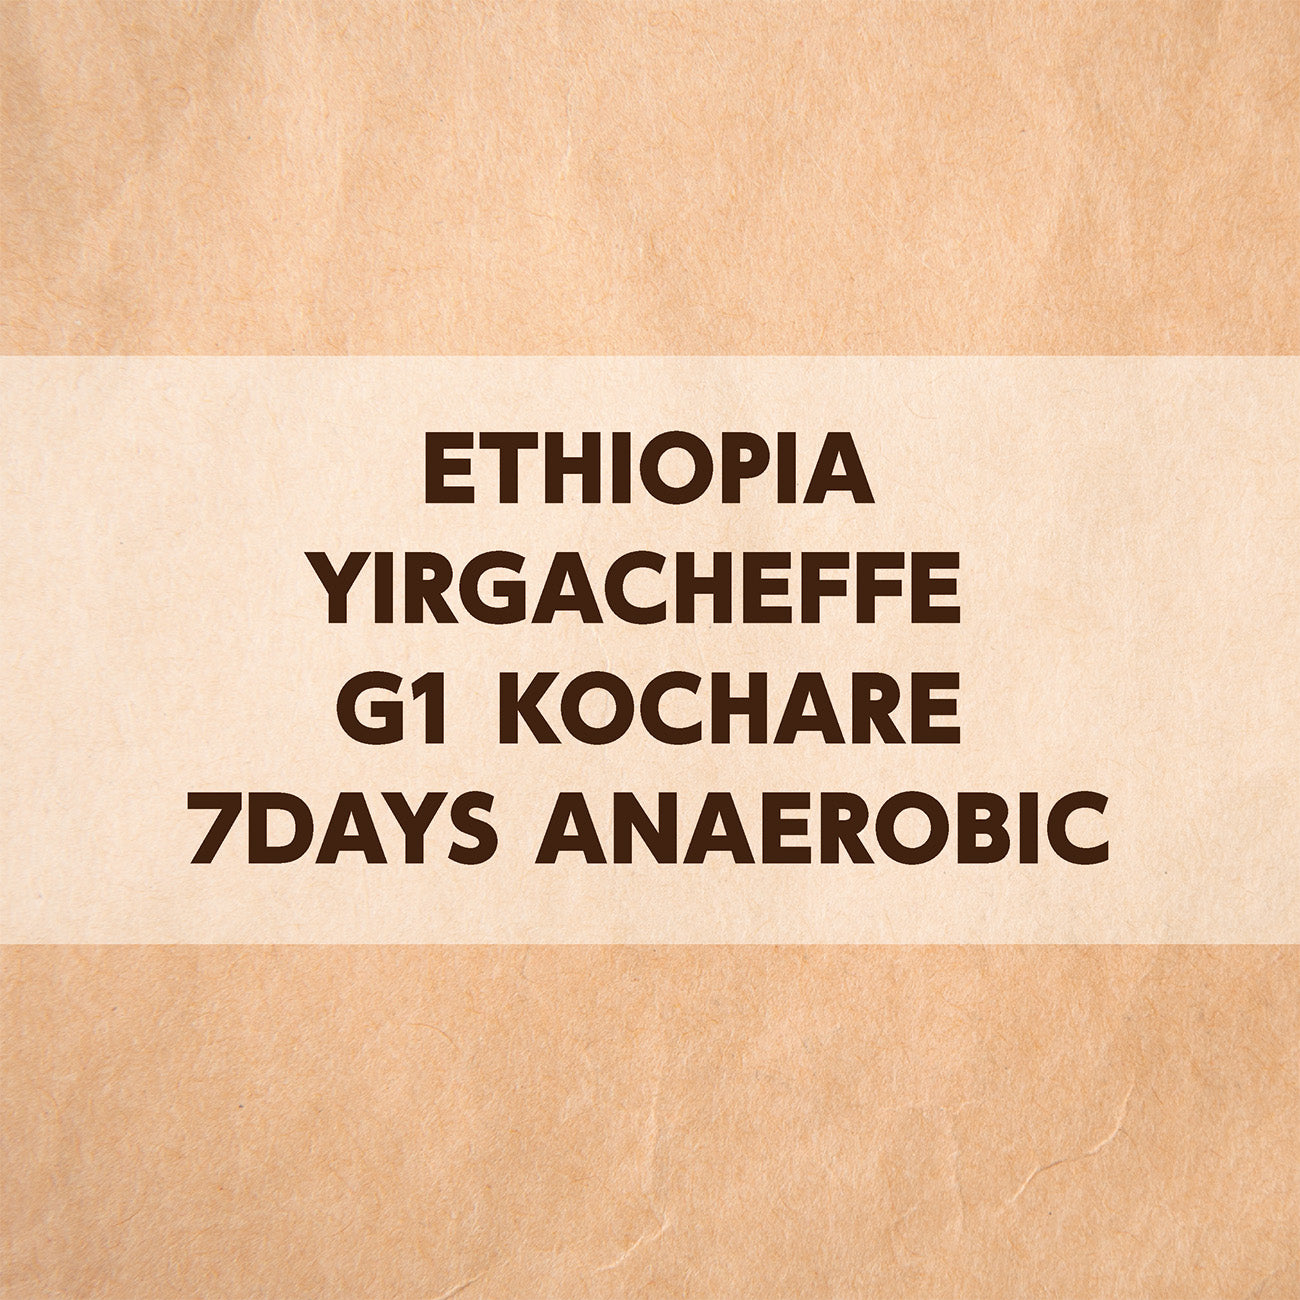 エチオピア イルガチェフェG1 コチャレ 7Days アナエロビック